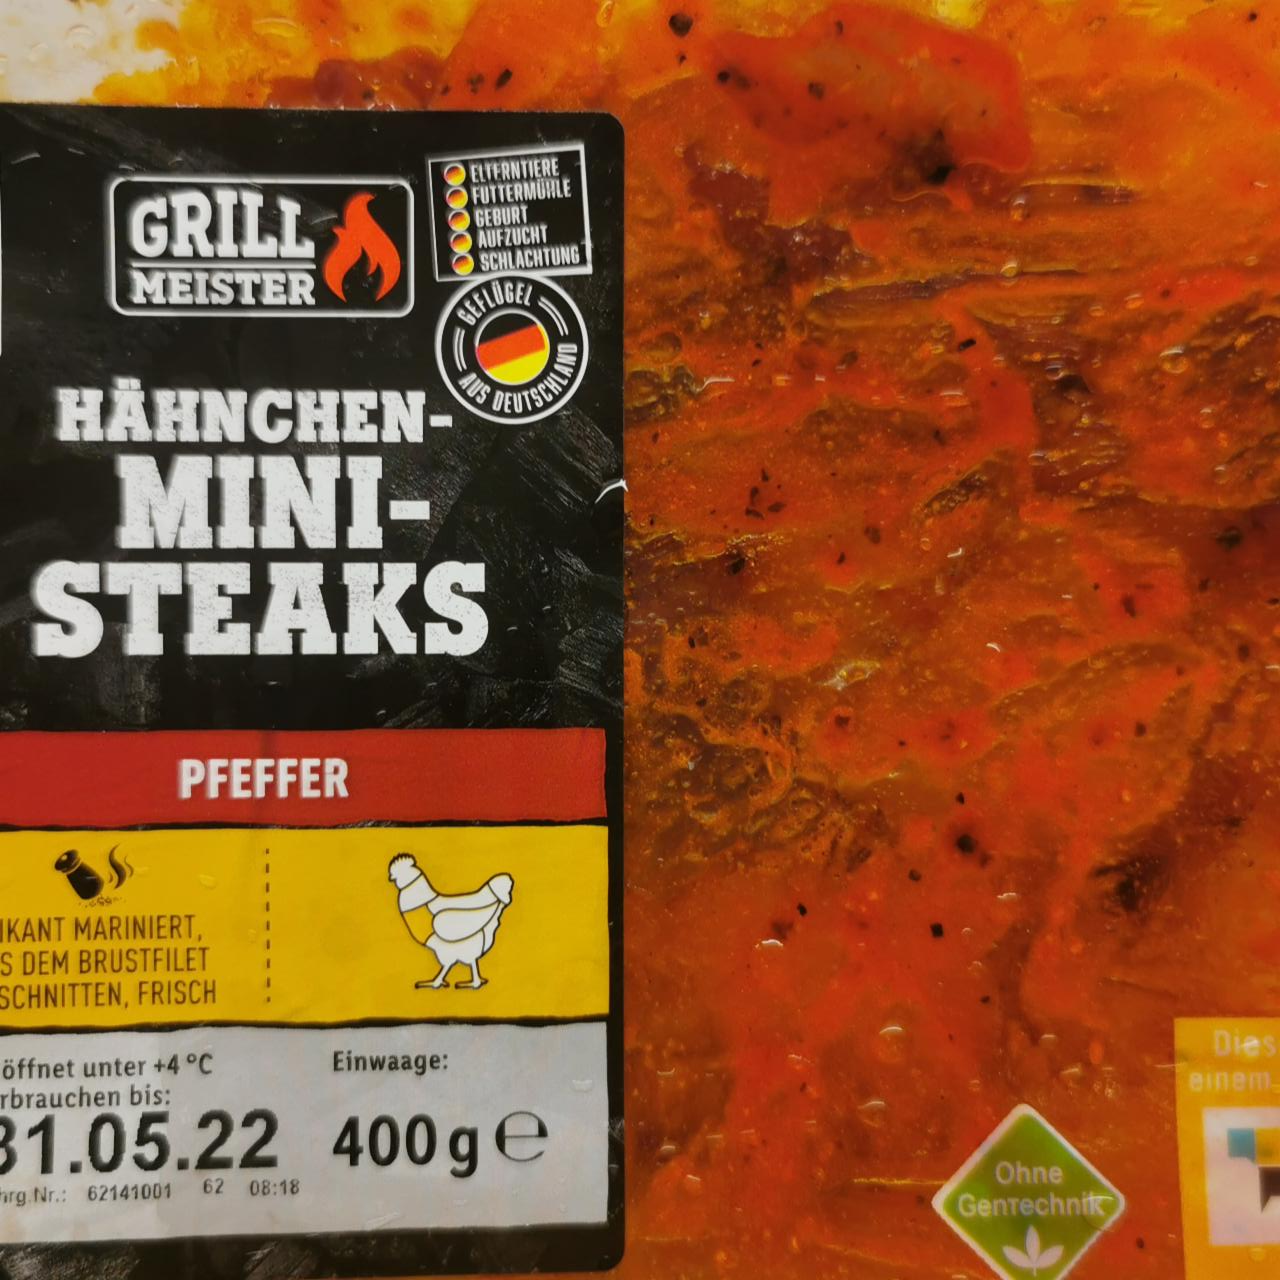 Fotografie - Hähnchen mini steaks preffer Grill Meister